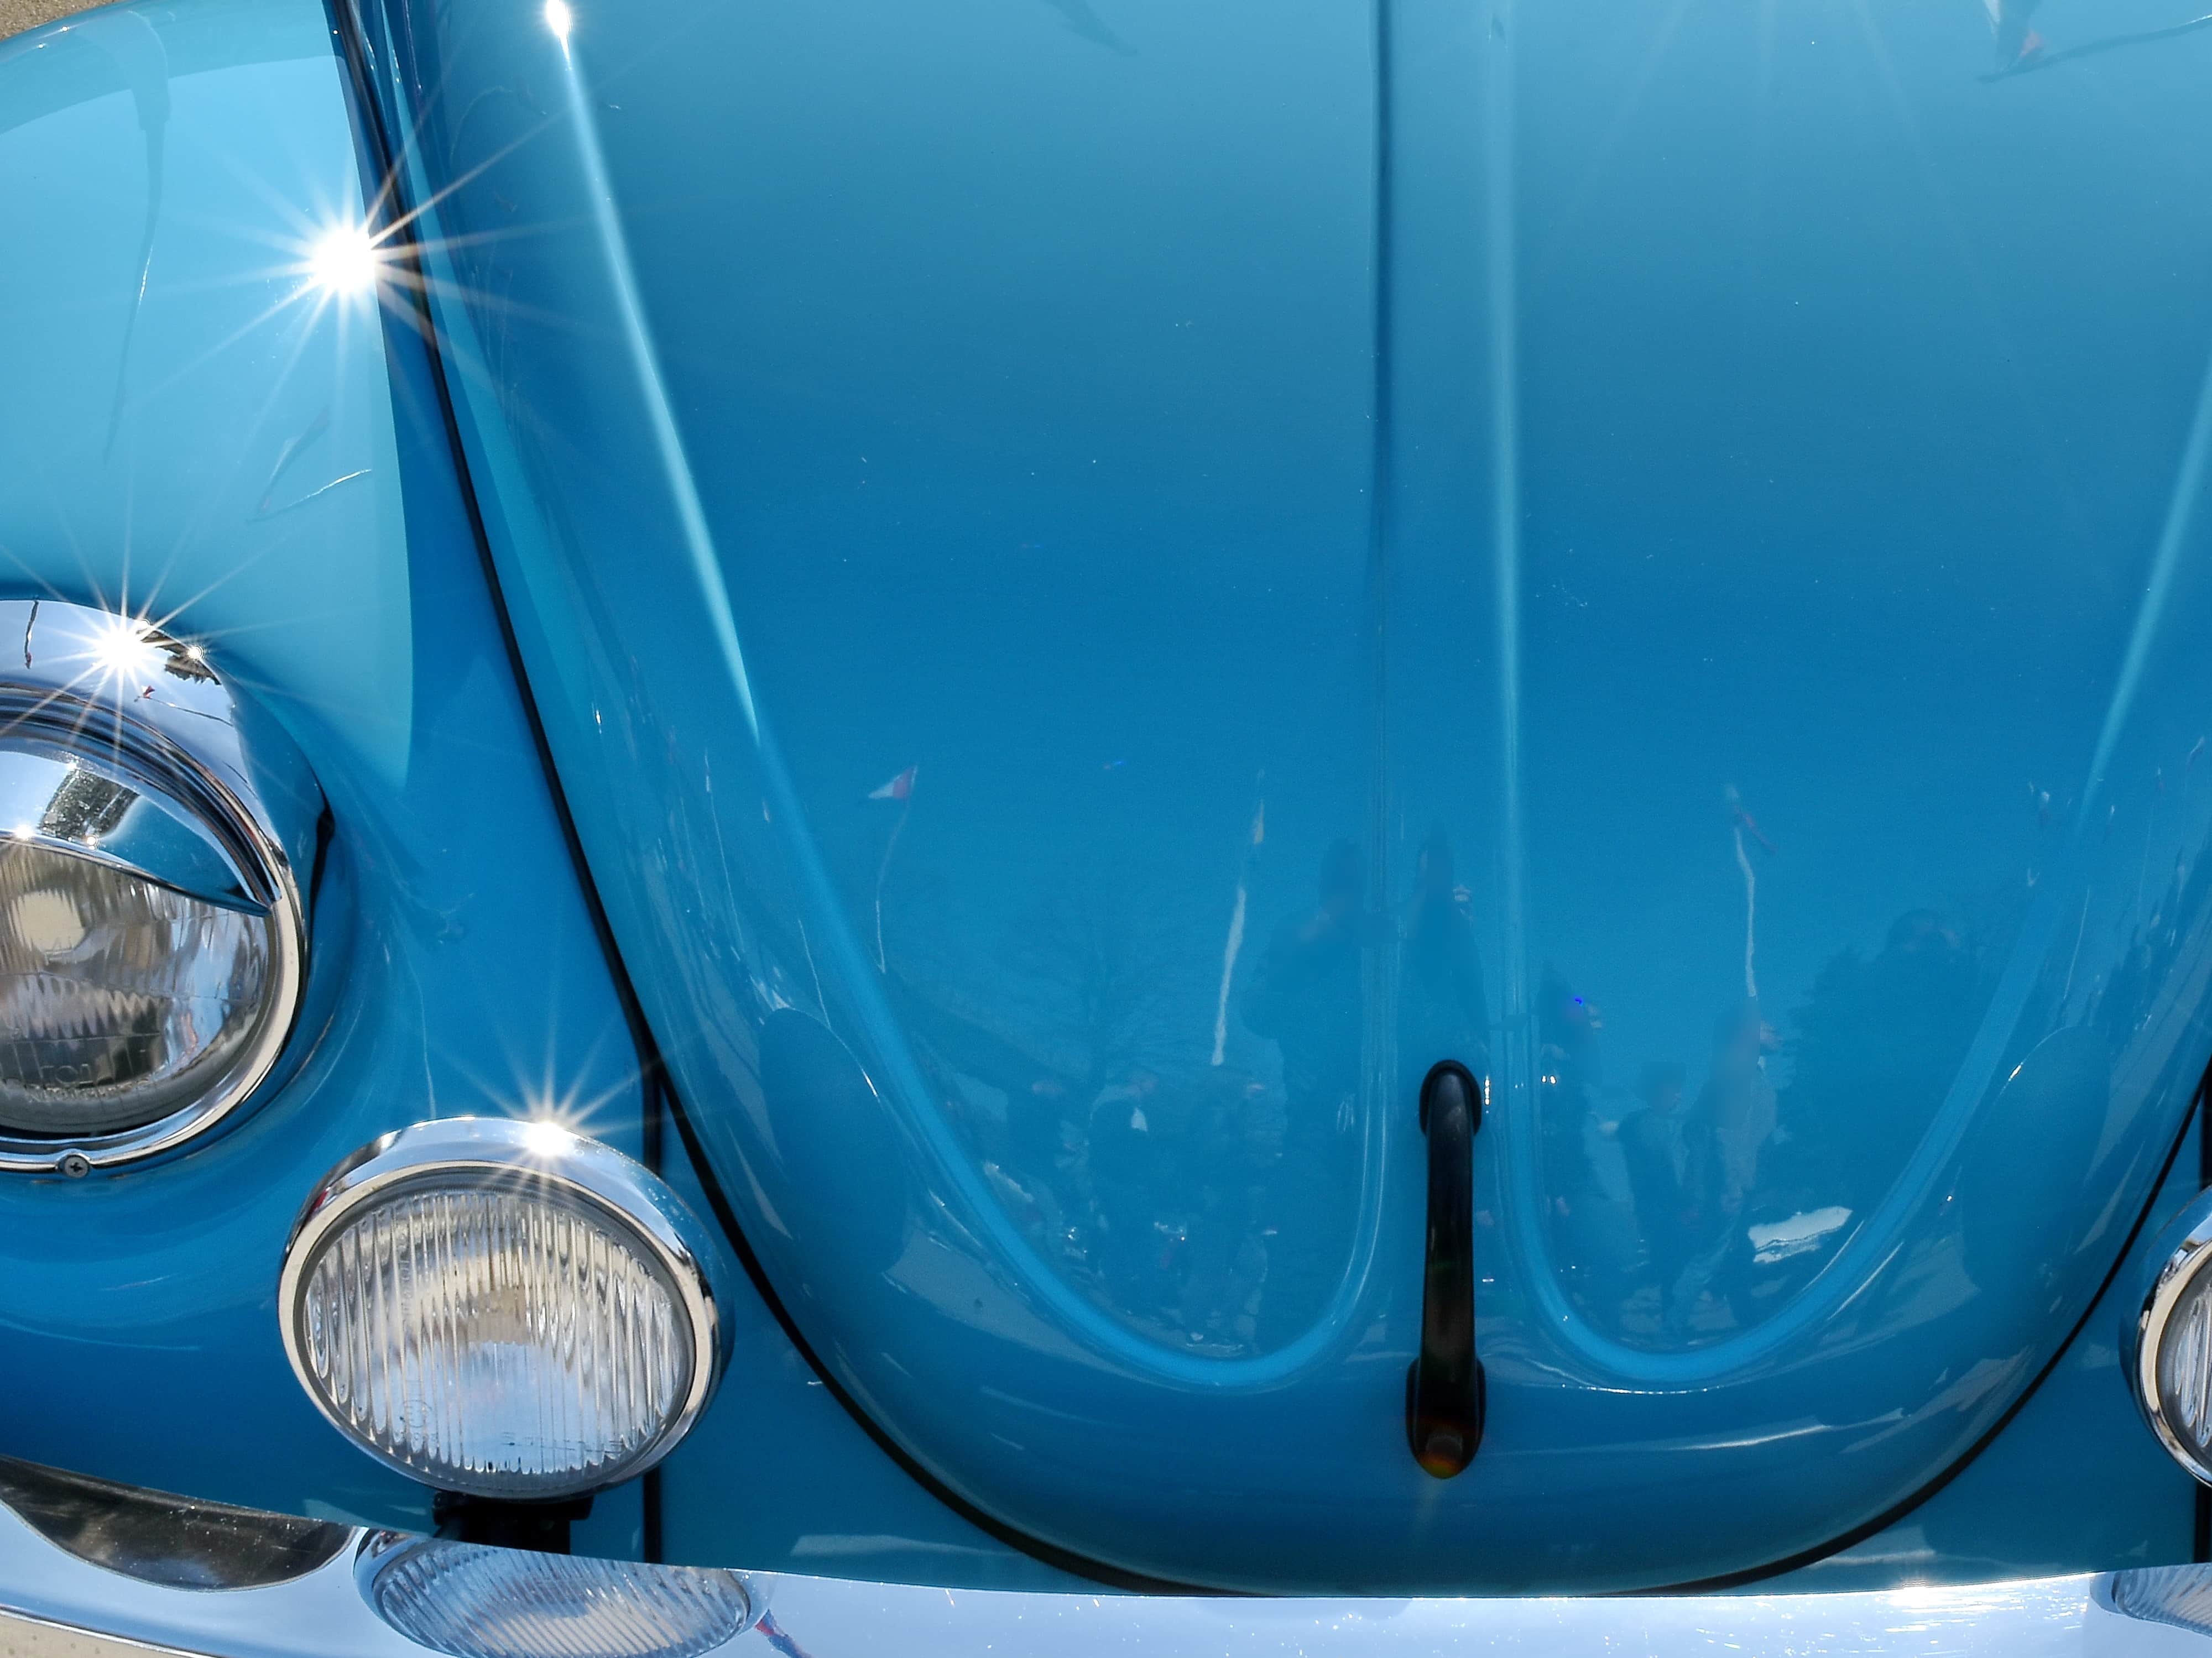 Shiny car. Отражение автомобиля. Голубая машина с хромированными зеркалами. Белая машина с хромированными деталями. Отражение н хроме авто.